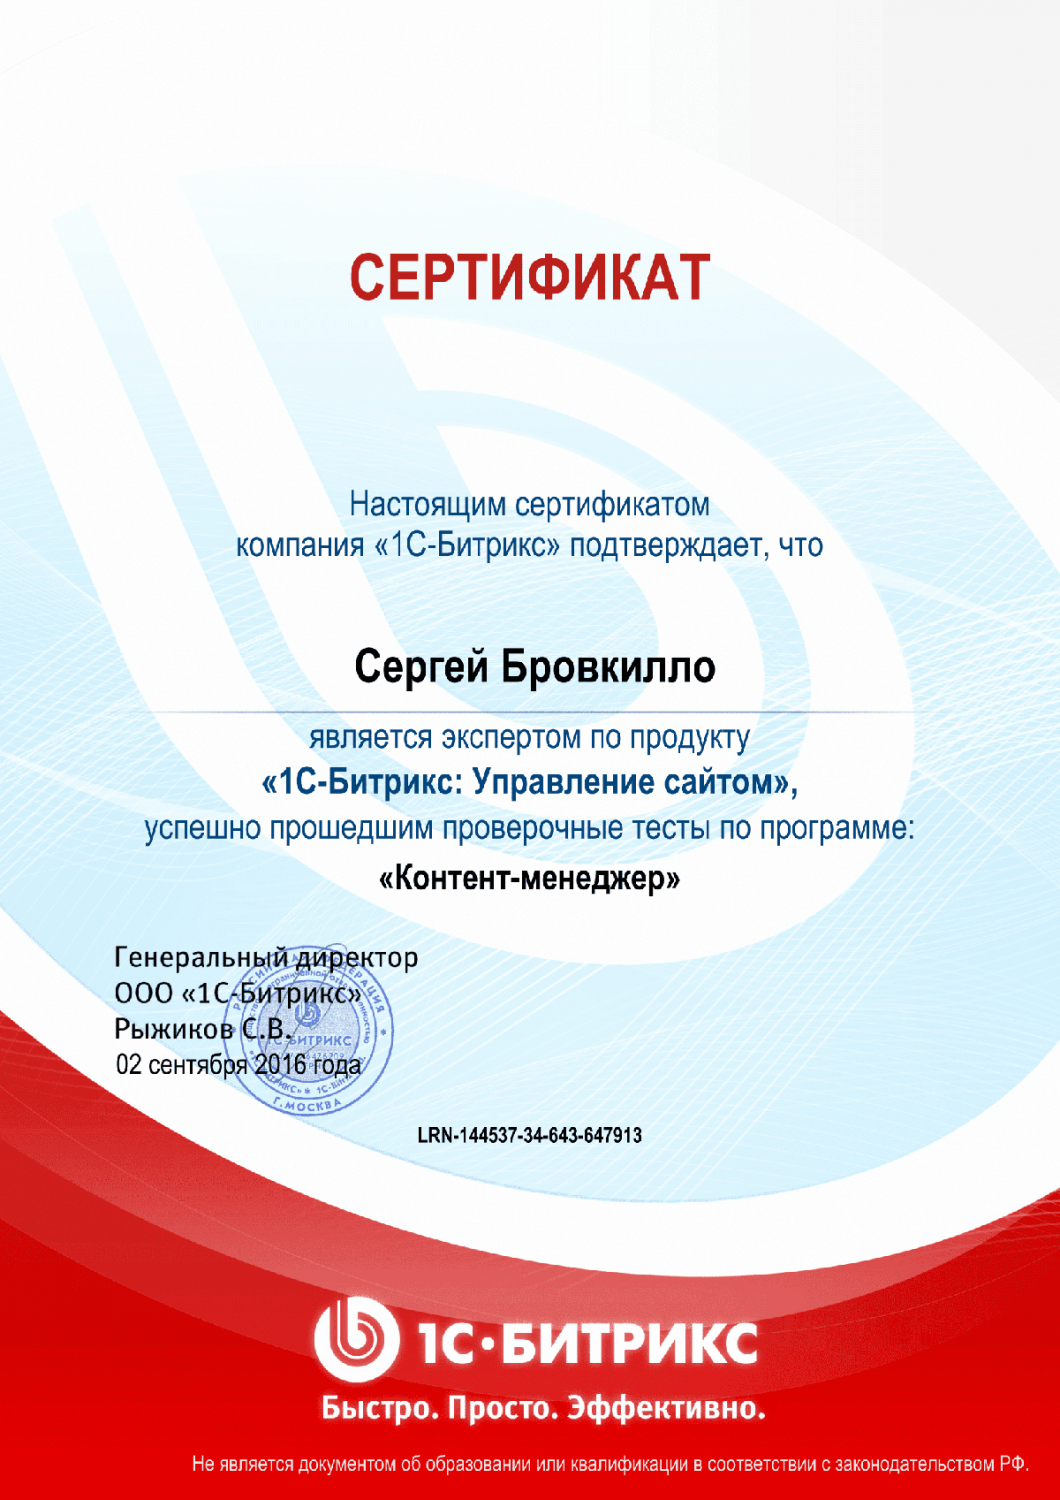 Сертификат эксперта по программе "Контент-менеджер"" в Нижнего Новгорода